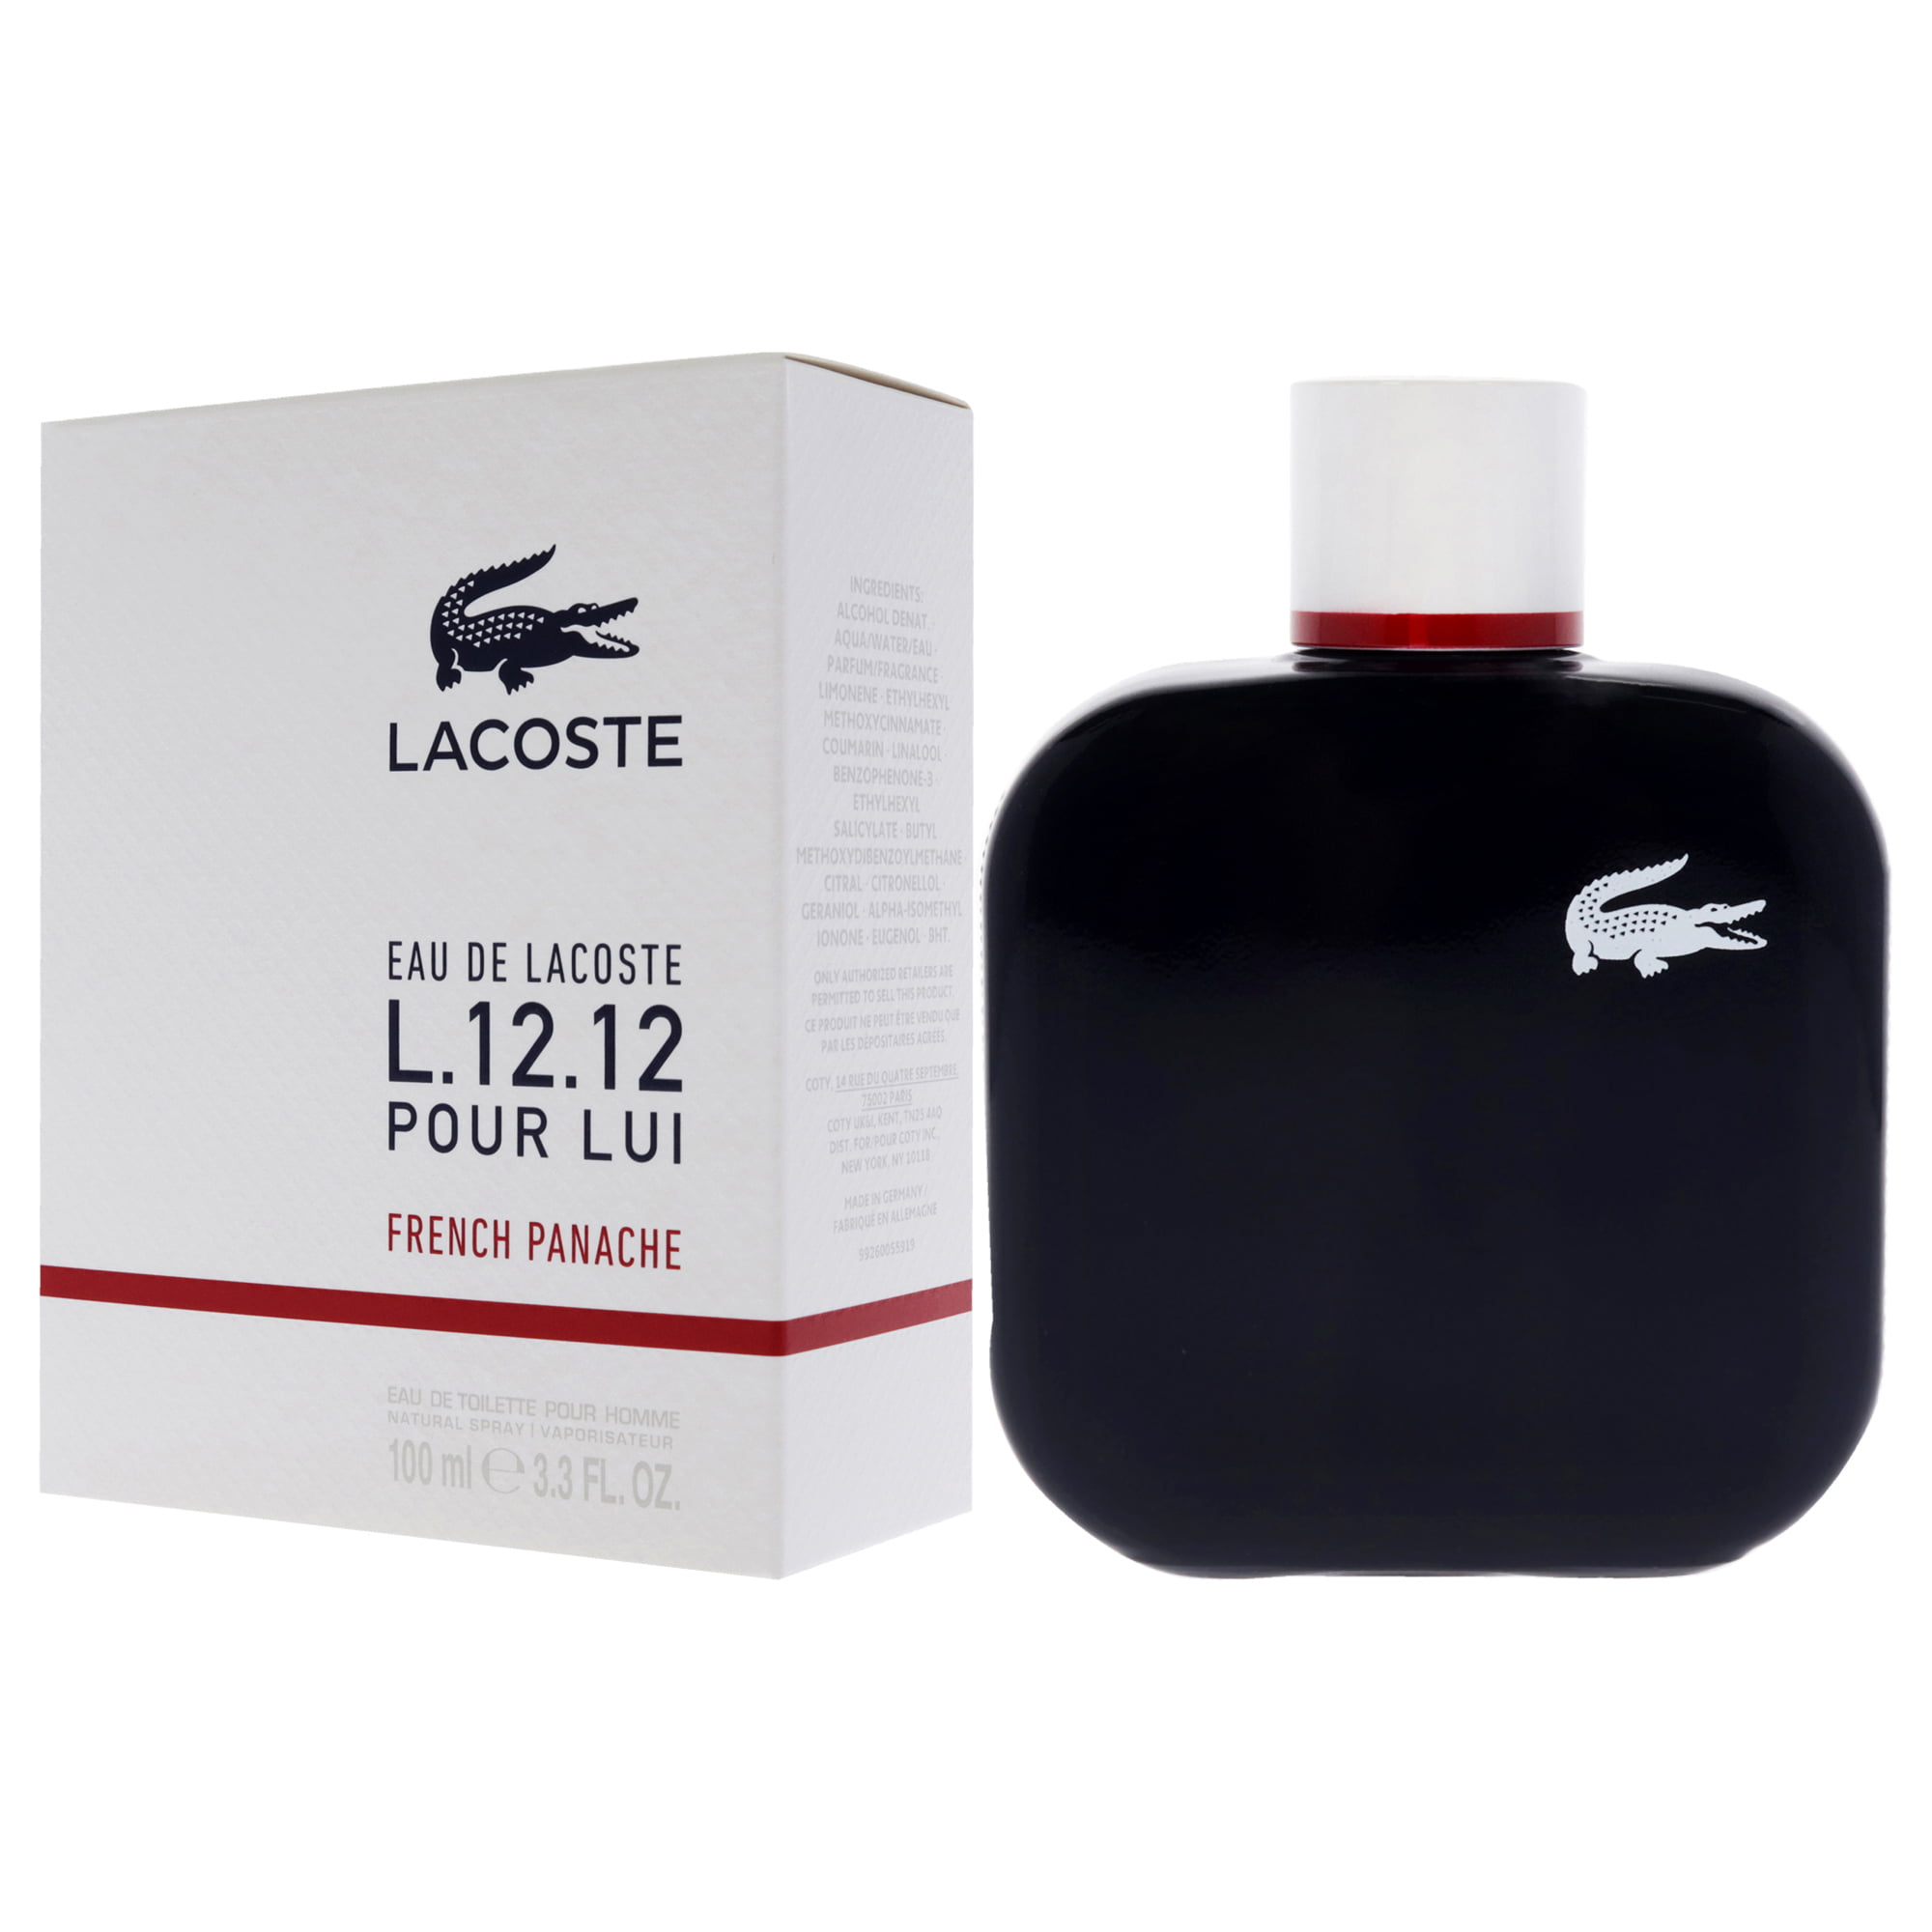 Lacoste Eau de Lacoste L.12.12 Pour Homme French Panache by for Women 3.3 oz EDT Spray - Walmart.com